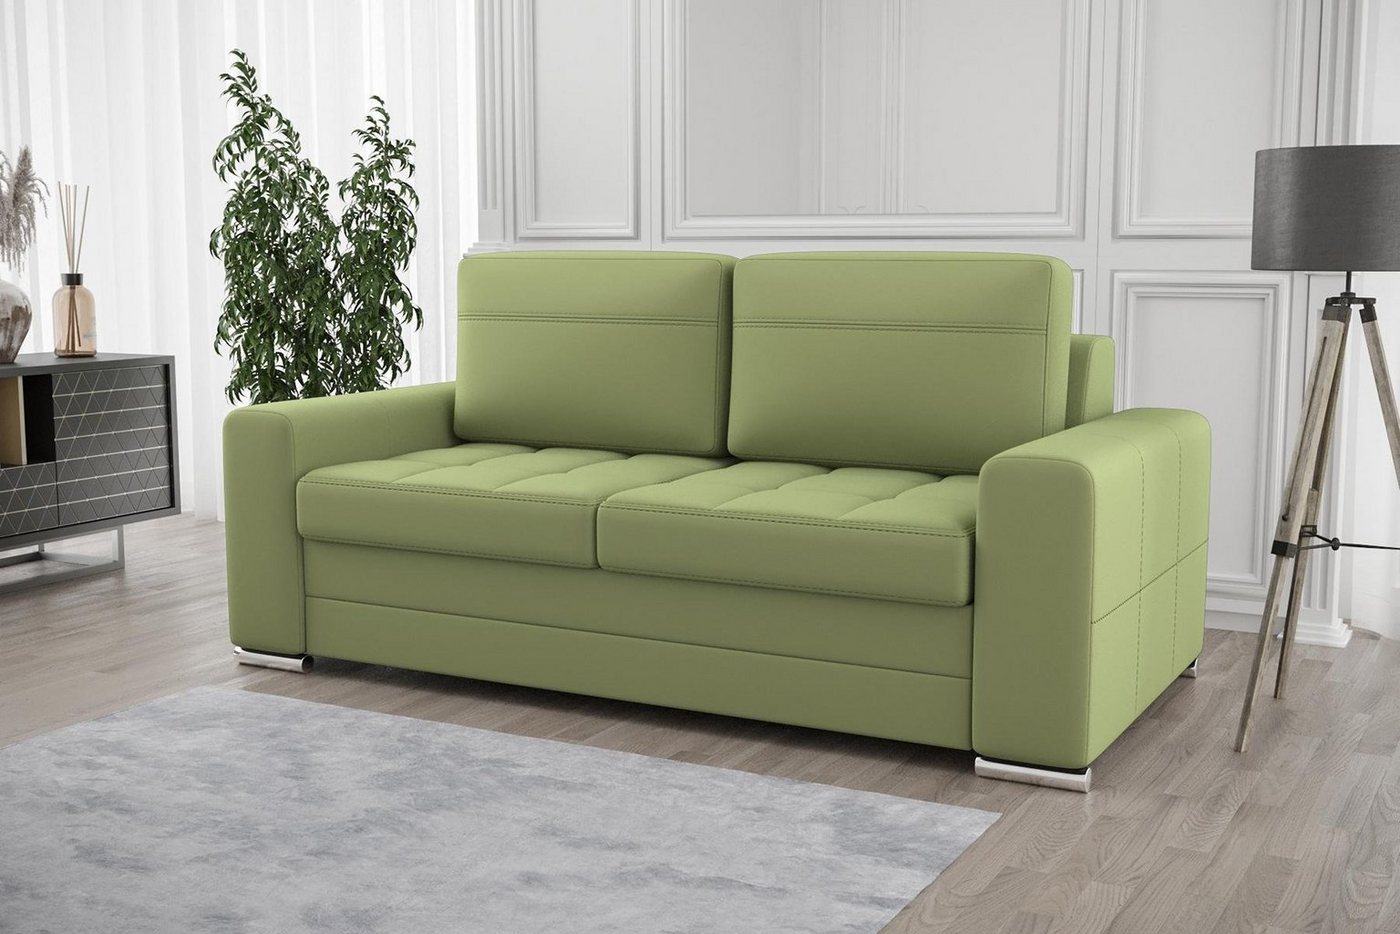 JVmoebel Sofa Design Polster Modern 100% Textil Stoff Modern Zweisitzer, Made in Europe von JVmoebel